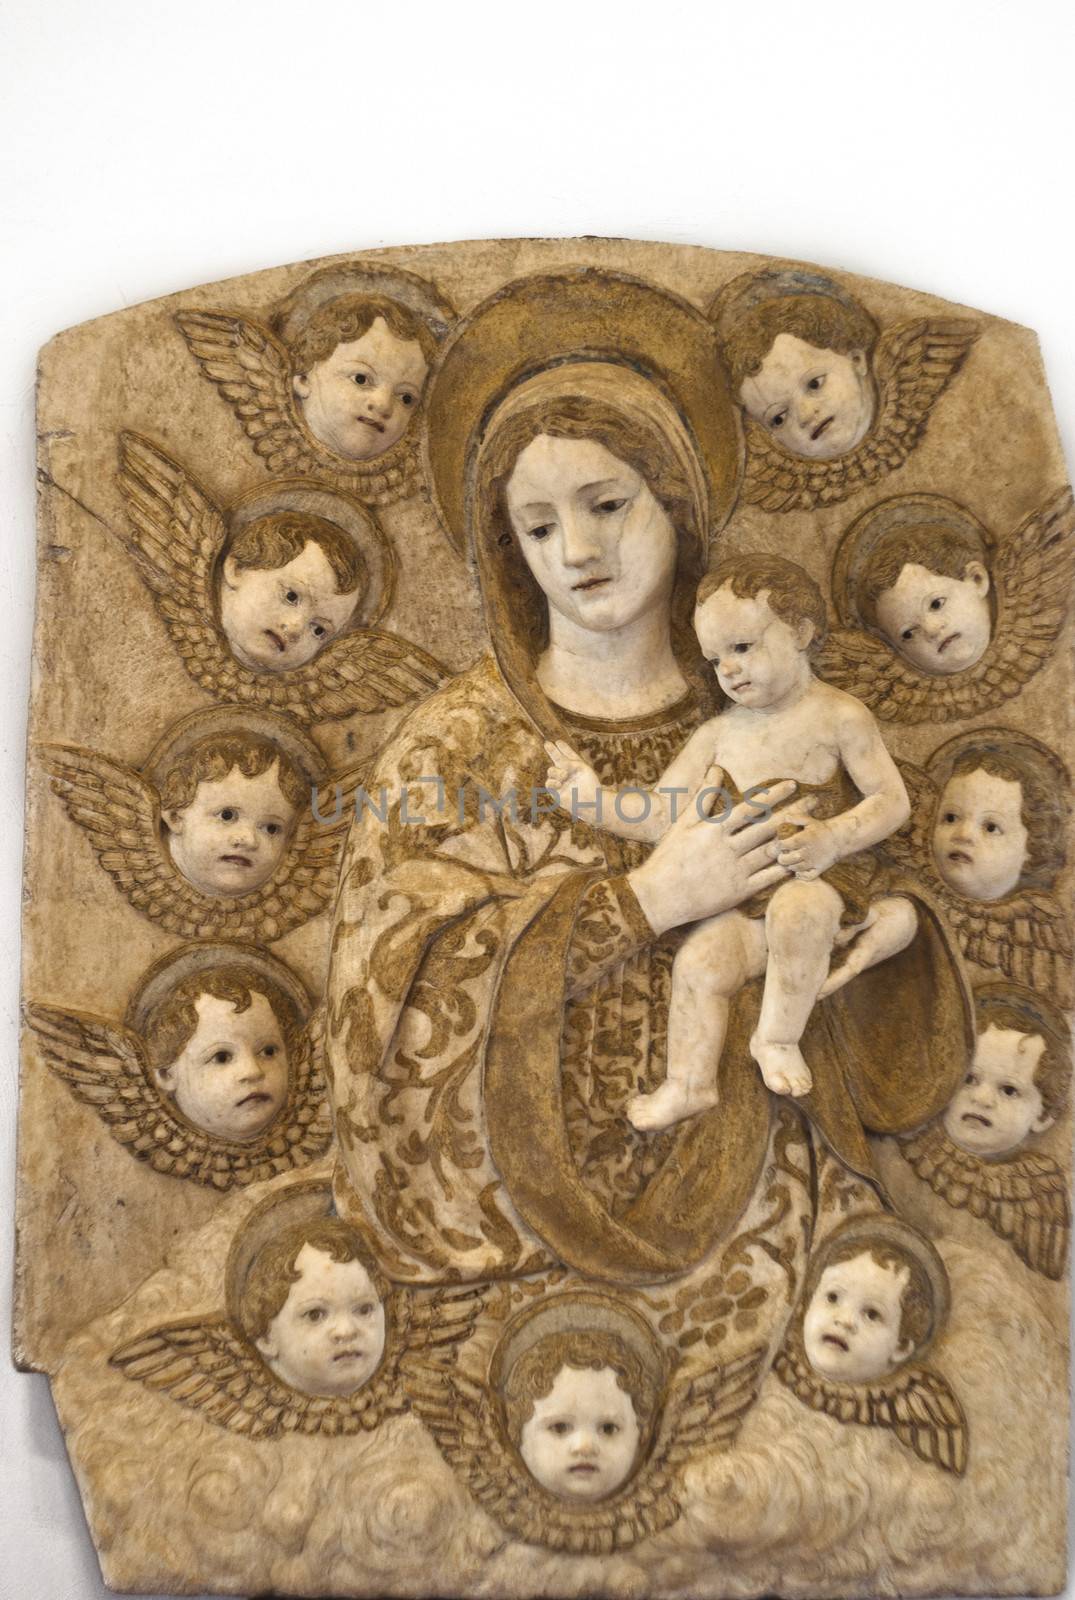 Detail of sculpture "Madonna con Bambino e Cherubini" by Antonel by gandolfocannatella